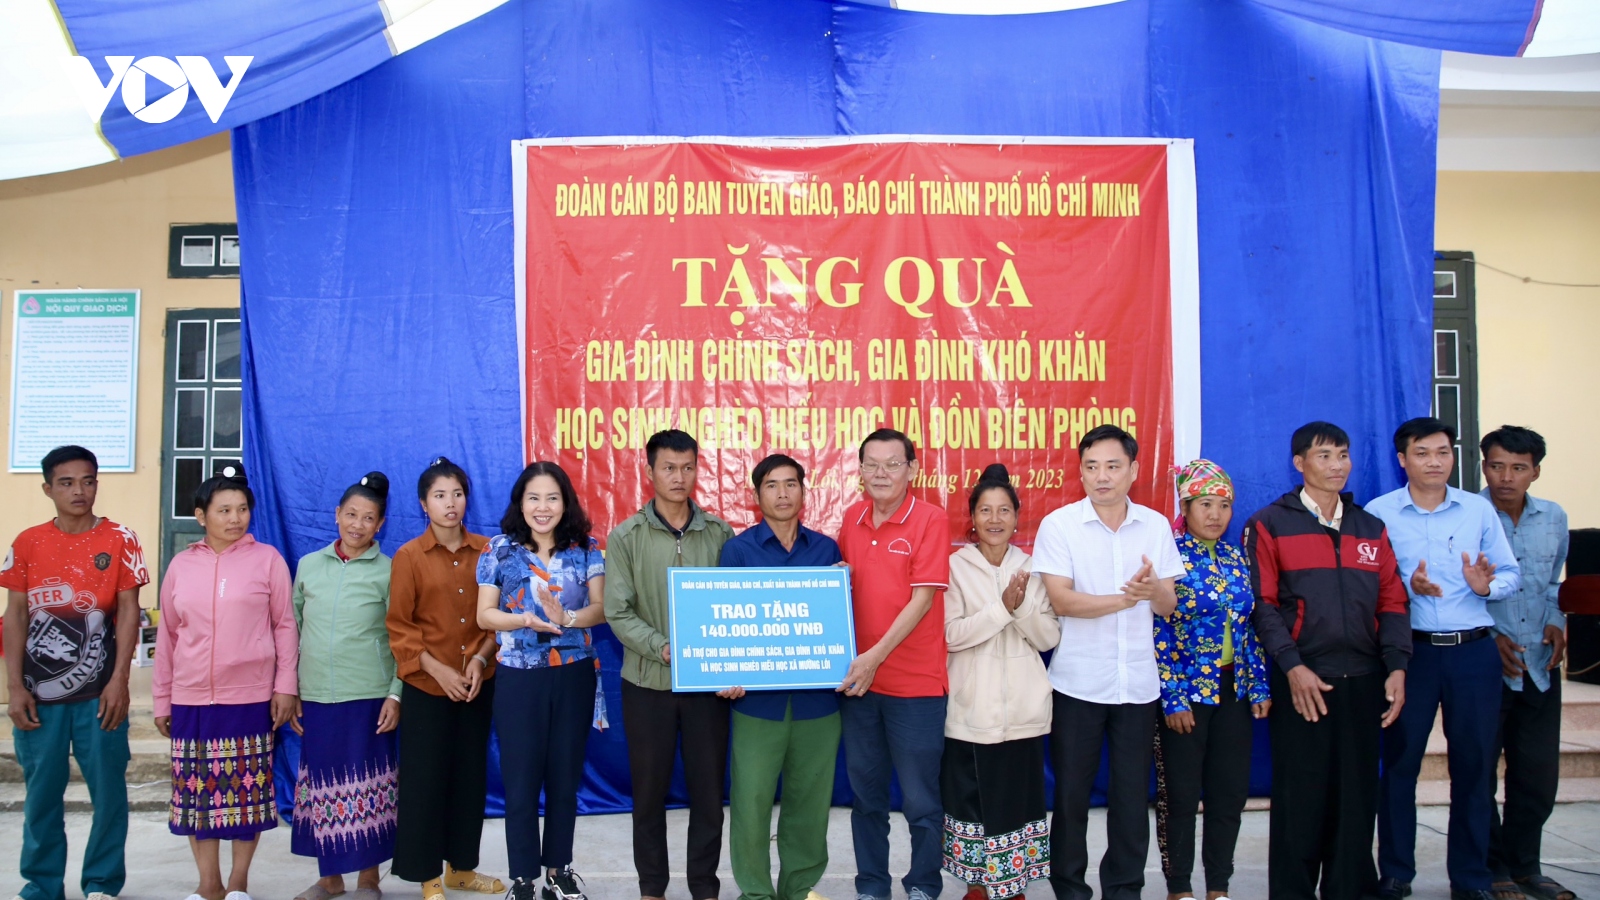 Đoàn cán bộ Tuyên giáo, báo chí, xuất bản TP.HCM tặng quà hộ nghèo tại Điện Biên